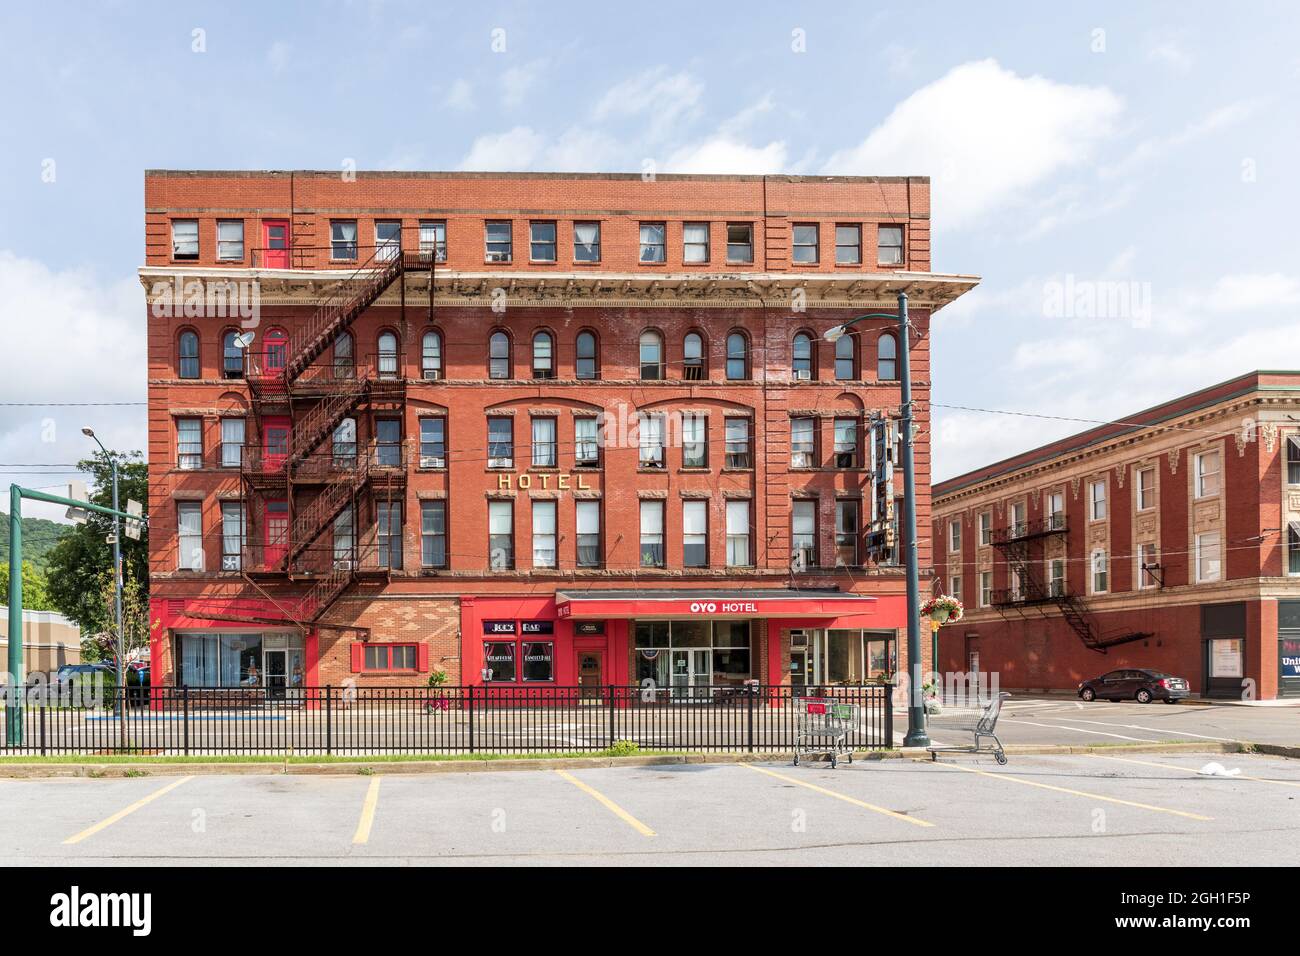 BRADFORD, PA, USA-13 AUGUST 2021: Das alte Hotelgebäude an der Main Street, jetzt Oyo Hotel genannt. Vorderansicht. Stockfoto